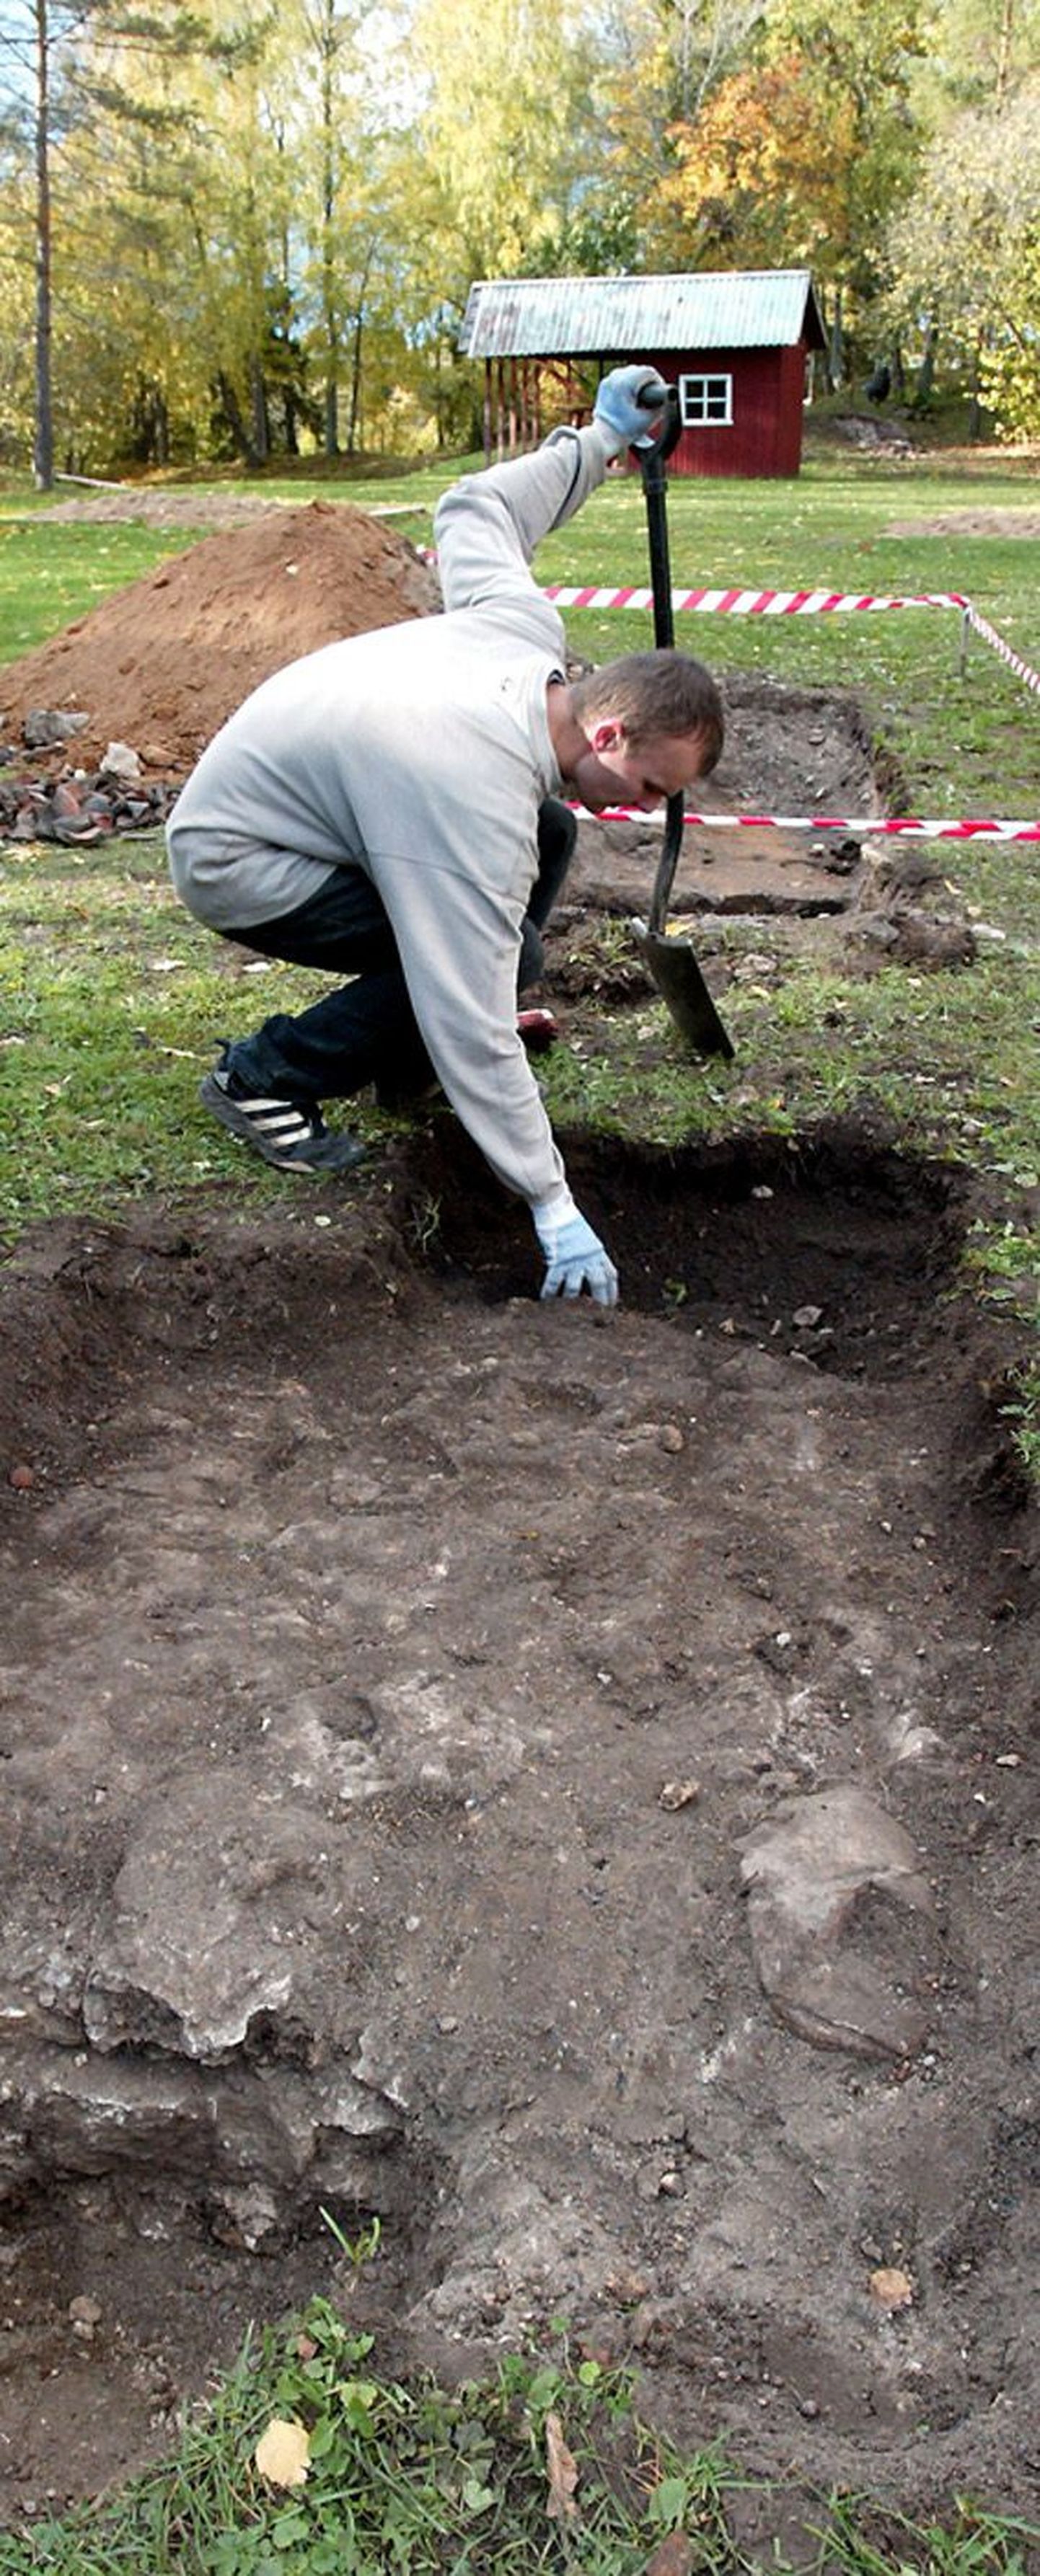 Tallinna Ülikooli III kursuse ajalootudeng Ingvar Dereševski Porkunis piiskopi pealinnuse müüre välja kaevamas.